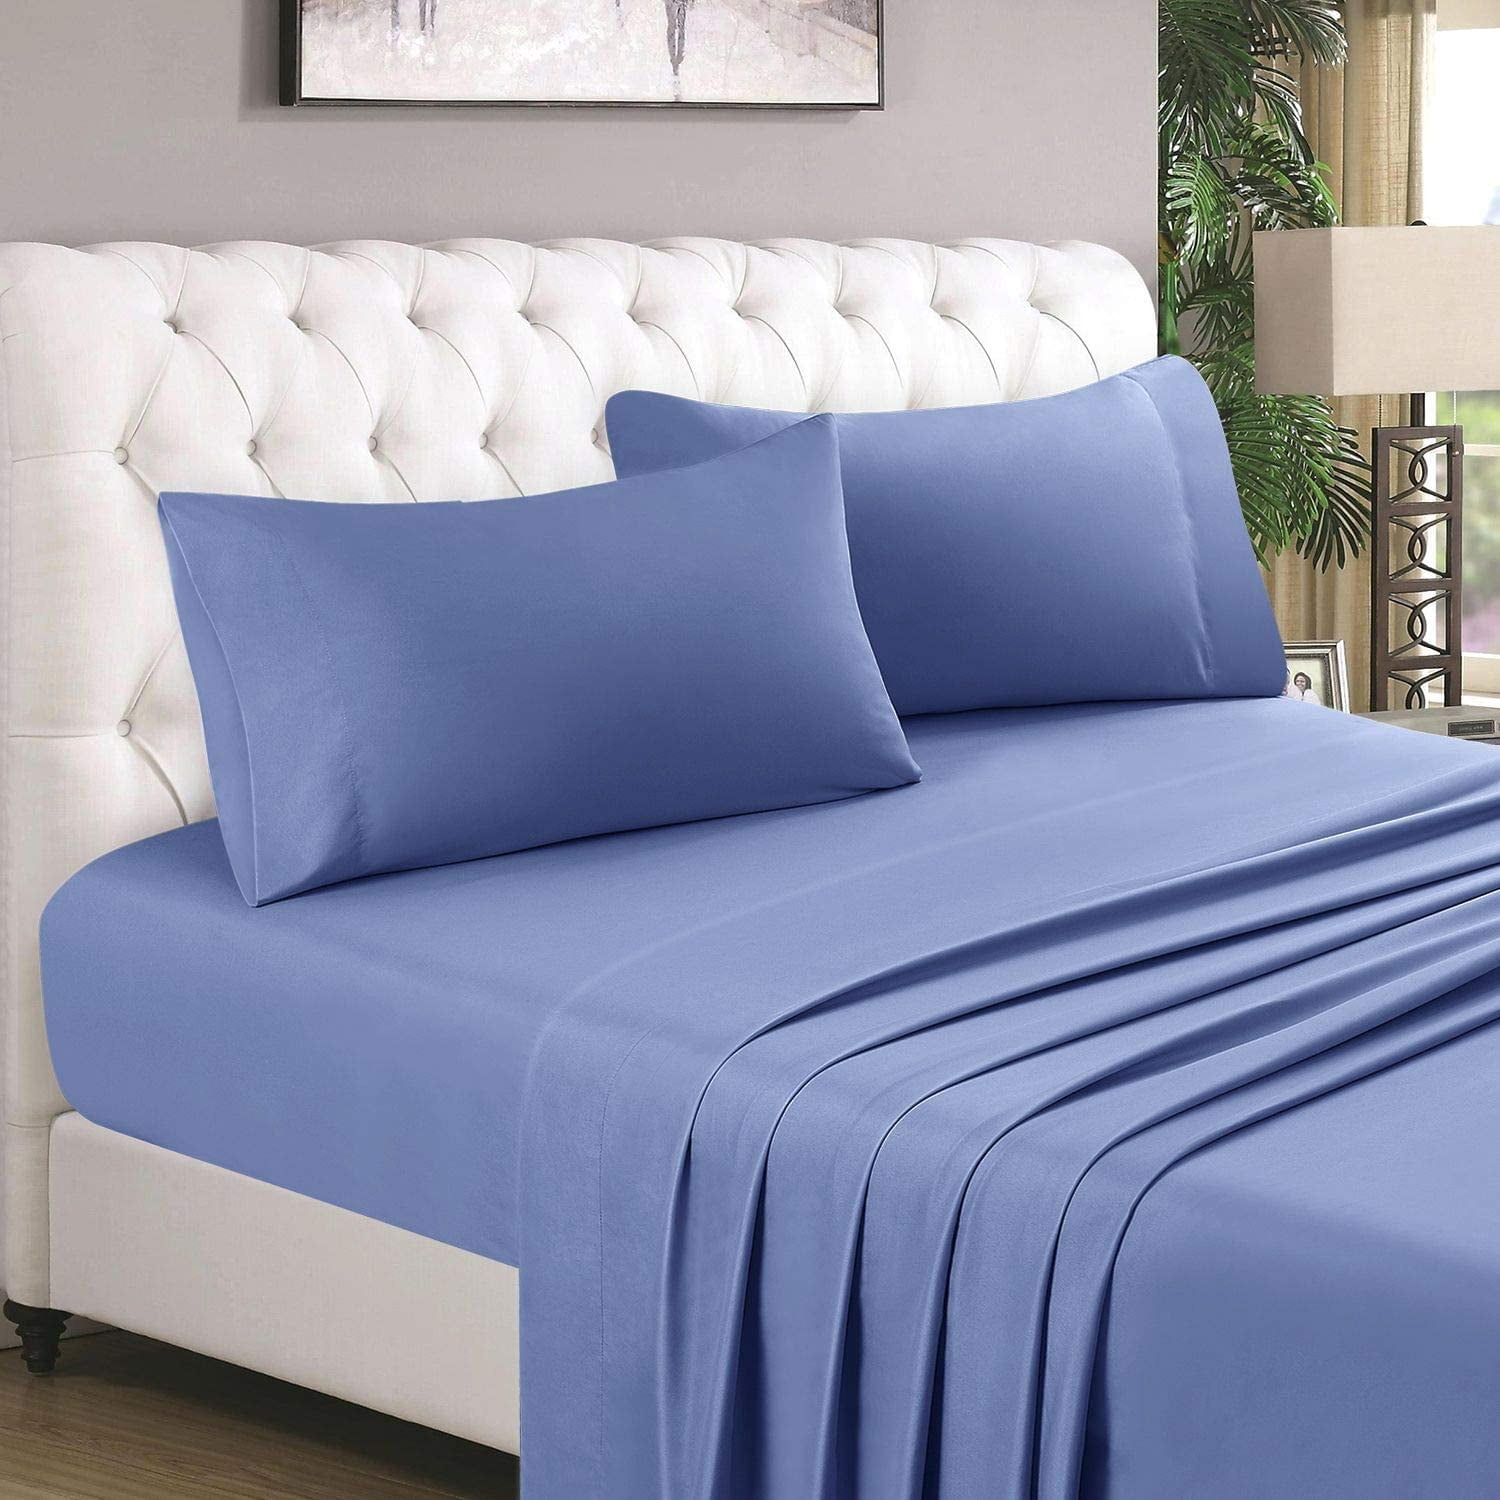 Blue Queen 100% Double Brushed 4 Piece Bedsheet Set Microfiber 